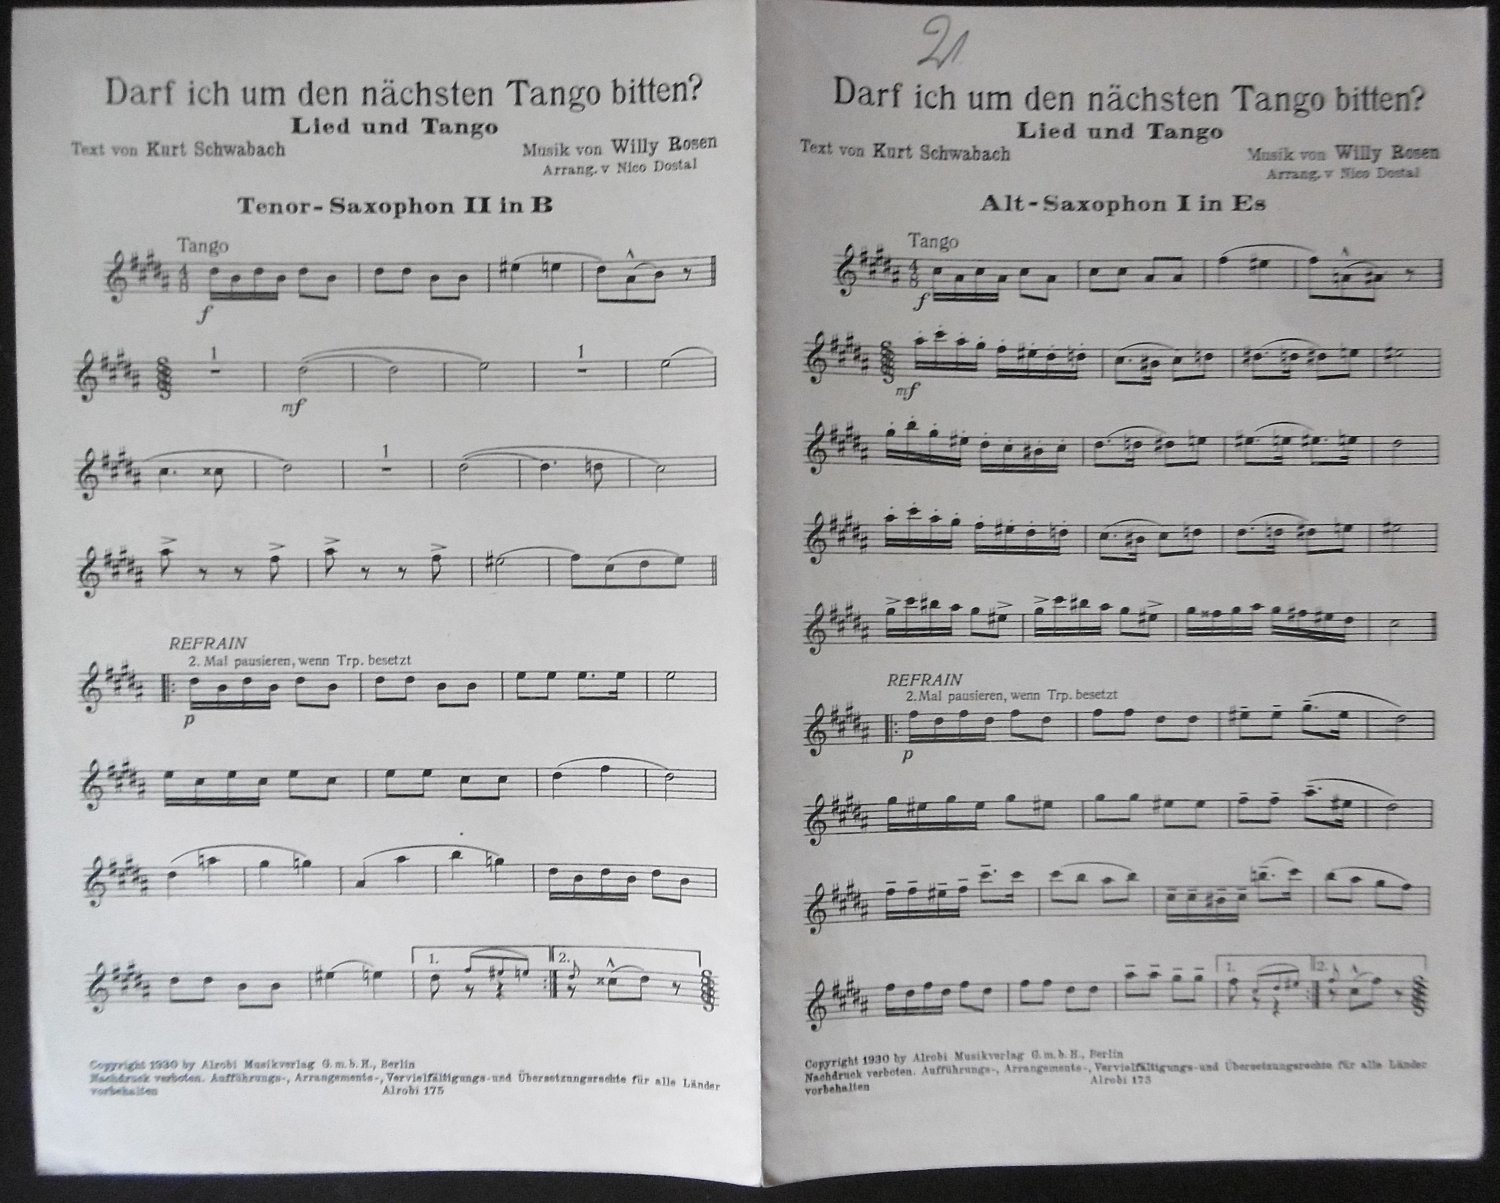 Darf ich um den nächsten Tango bitten? Lied und Tango. Arrang. v. Nico Dostal. 2 Blätter Noten für Alt-Saxophon I in Es, Tenorsaxophon II in B und Schlagzeug, Banjo. - Schwabach, Kurt (Text) / Rosen, Willy (Musik)